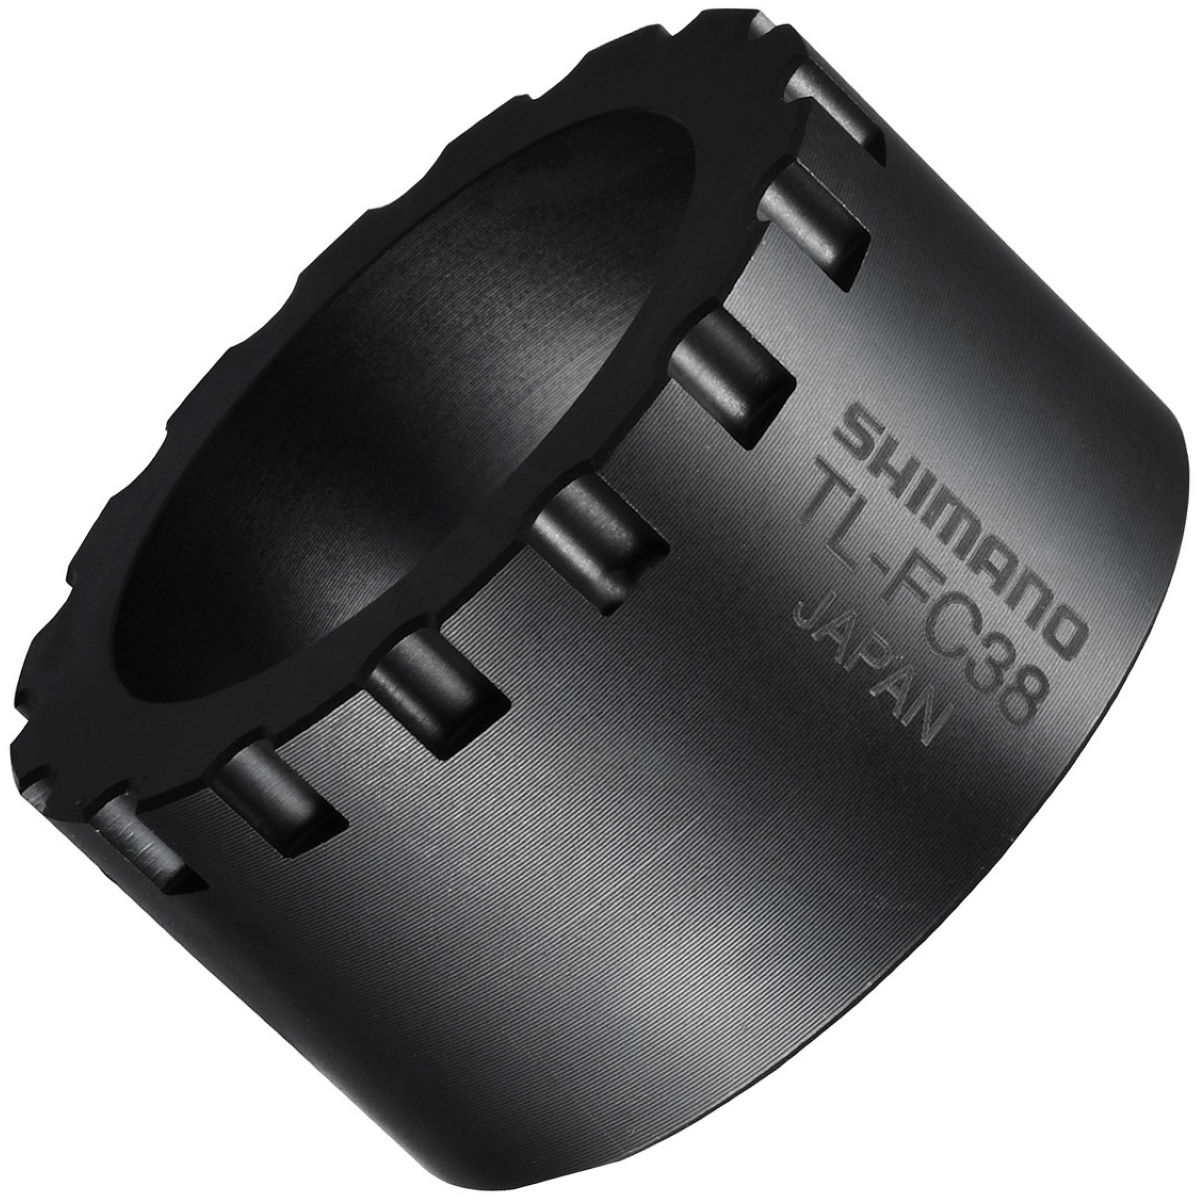 Shimano TL-FC38 Adaptor Removal Tool - Herramientas para cadena